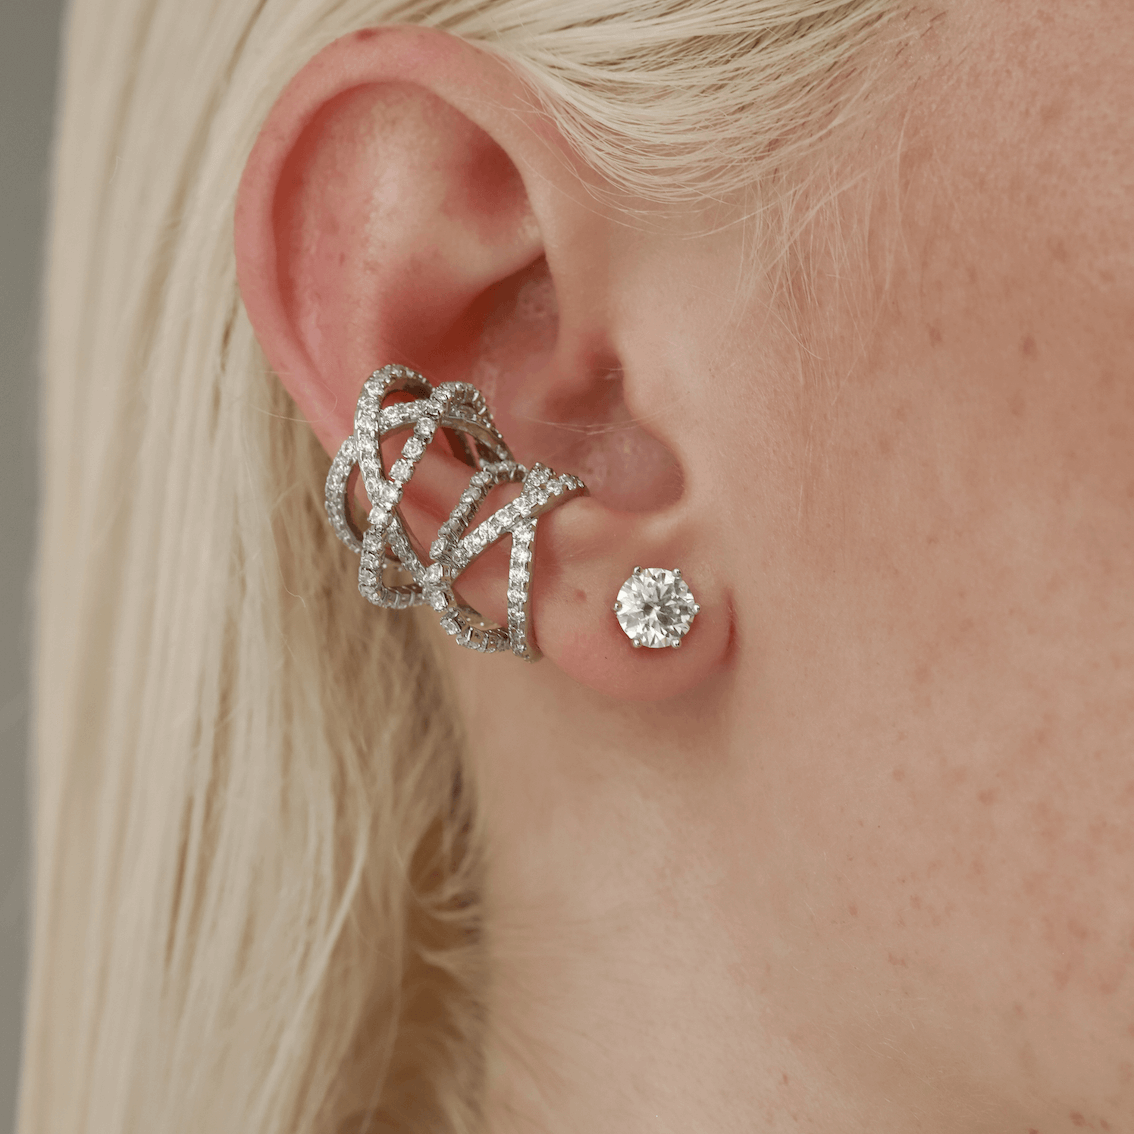 Chanel's Comet Flies Into Diamond Ear Cuffs